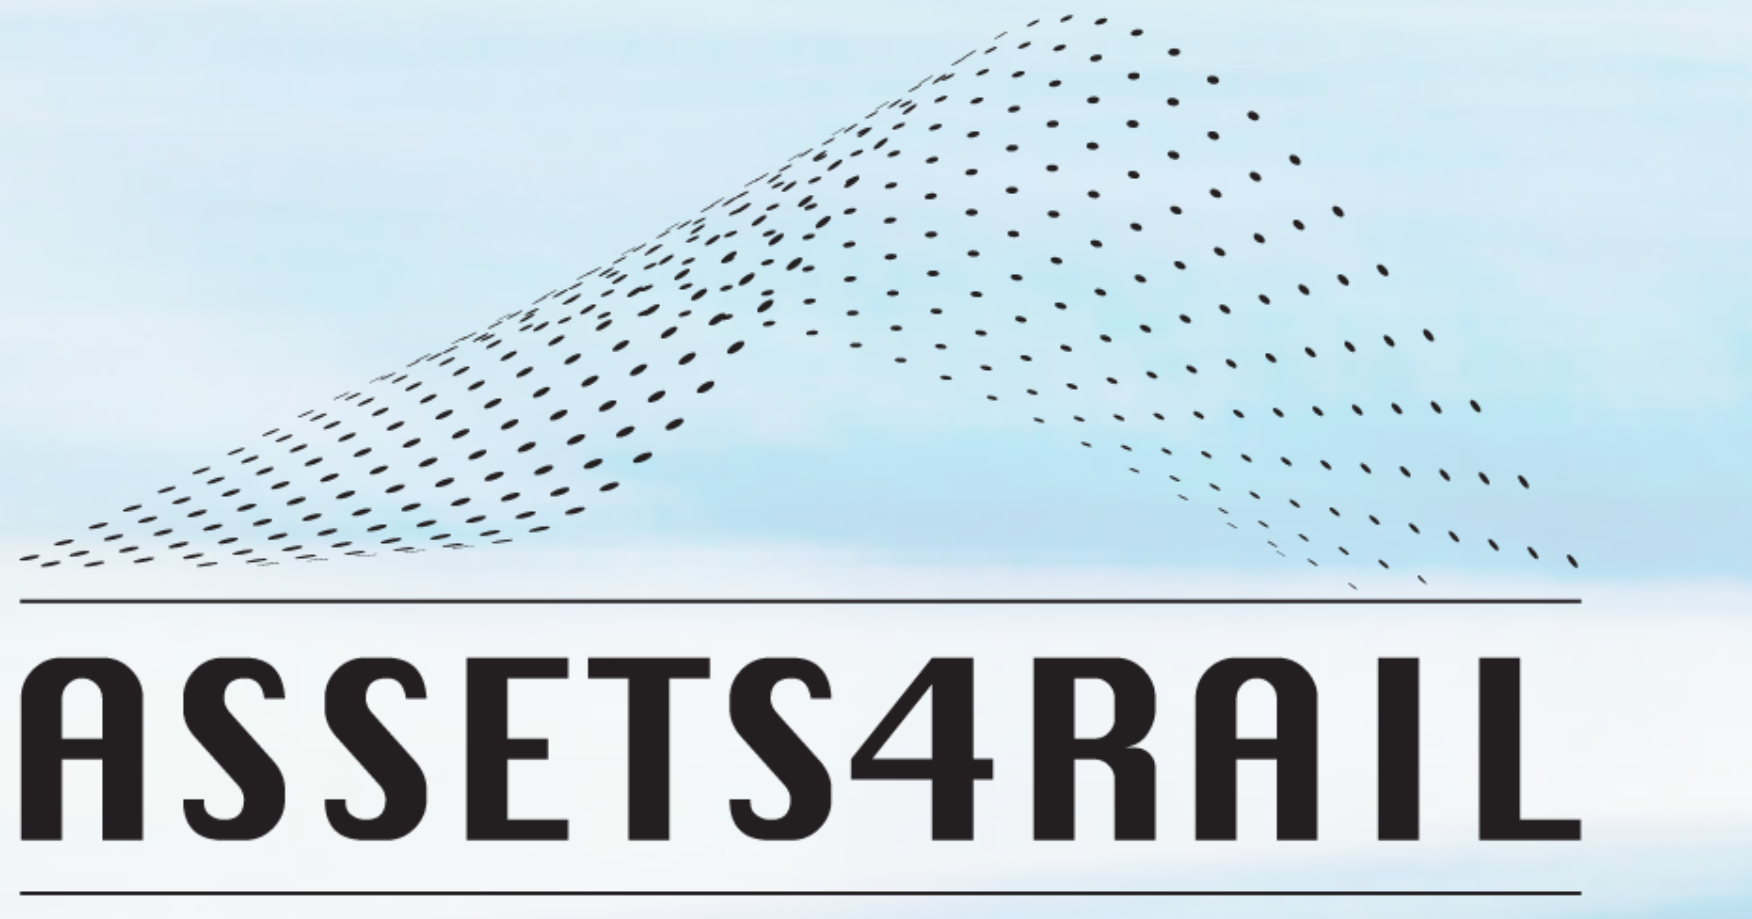 Logo Project Asstets4Rail